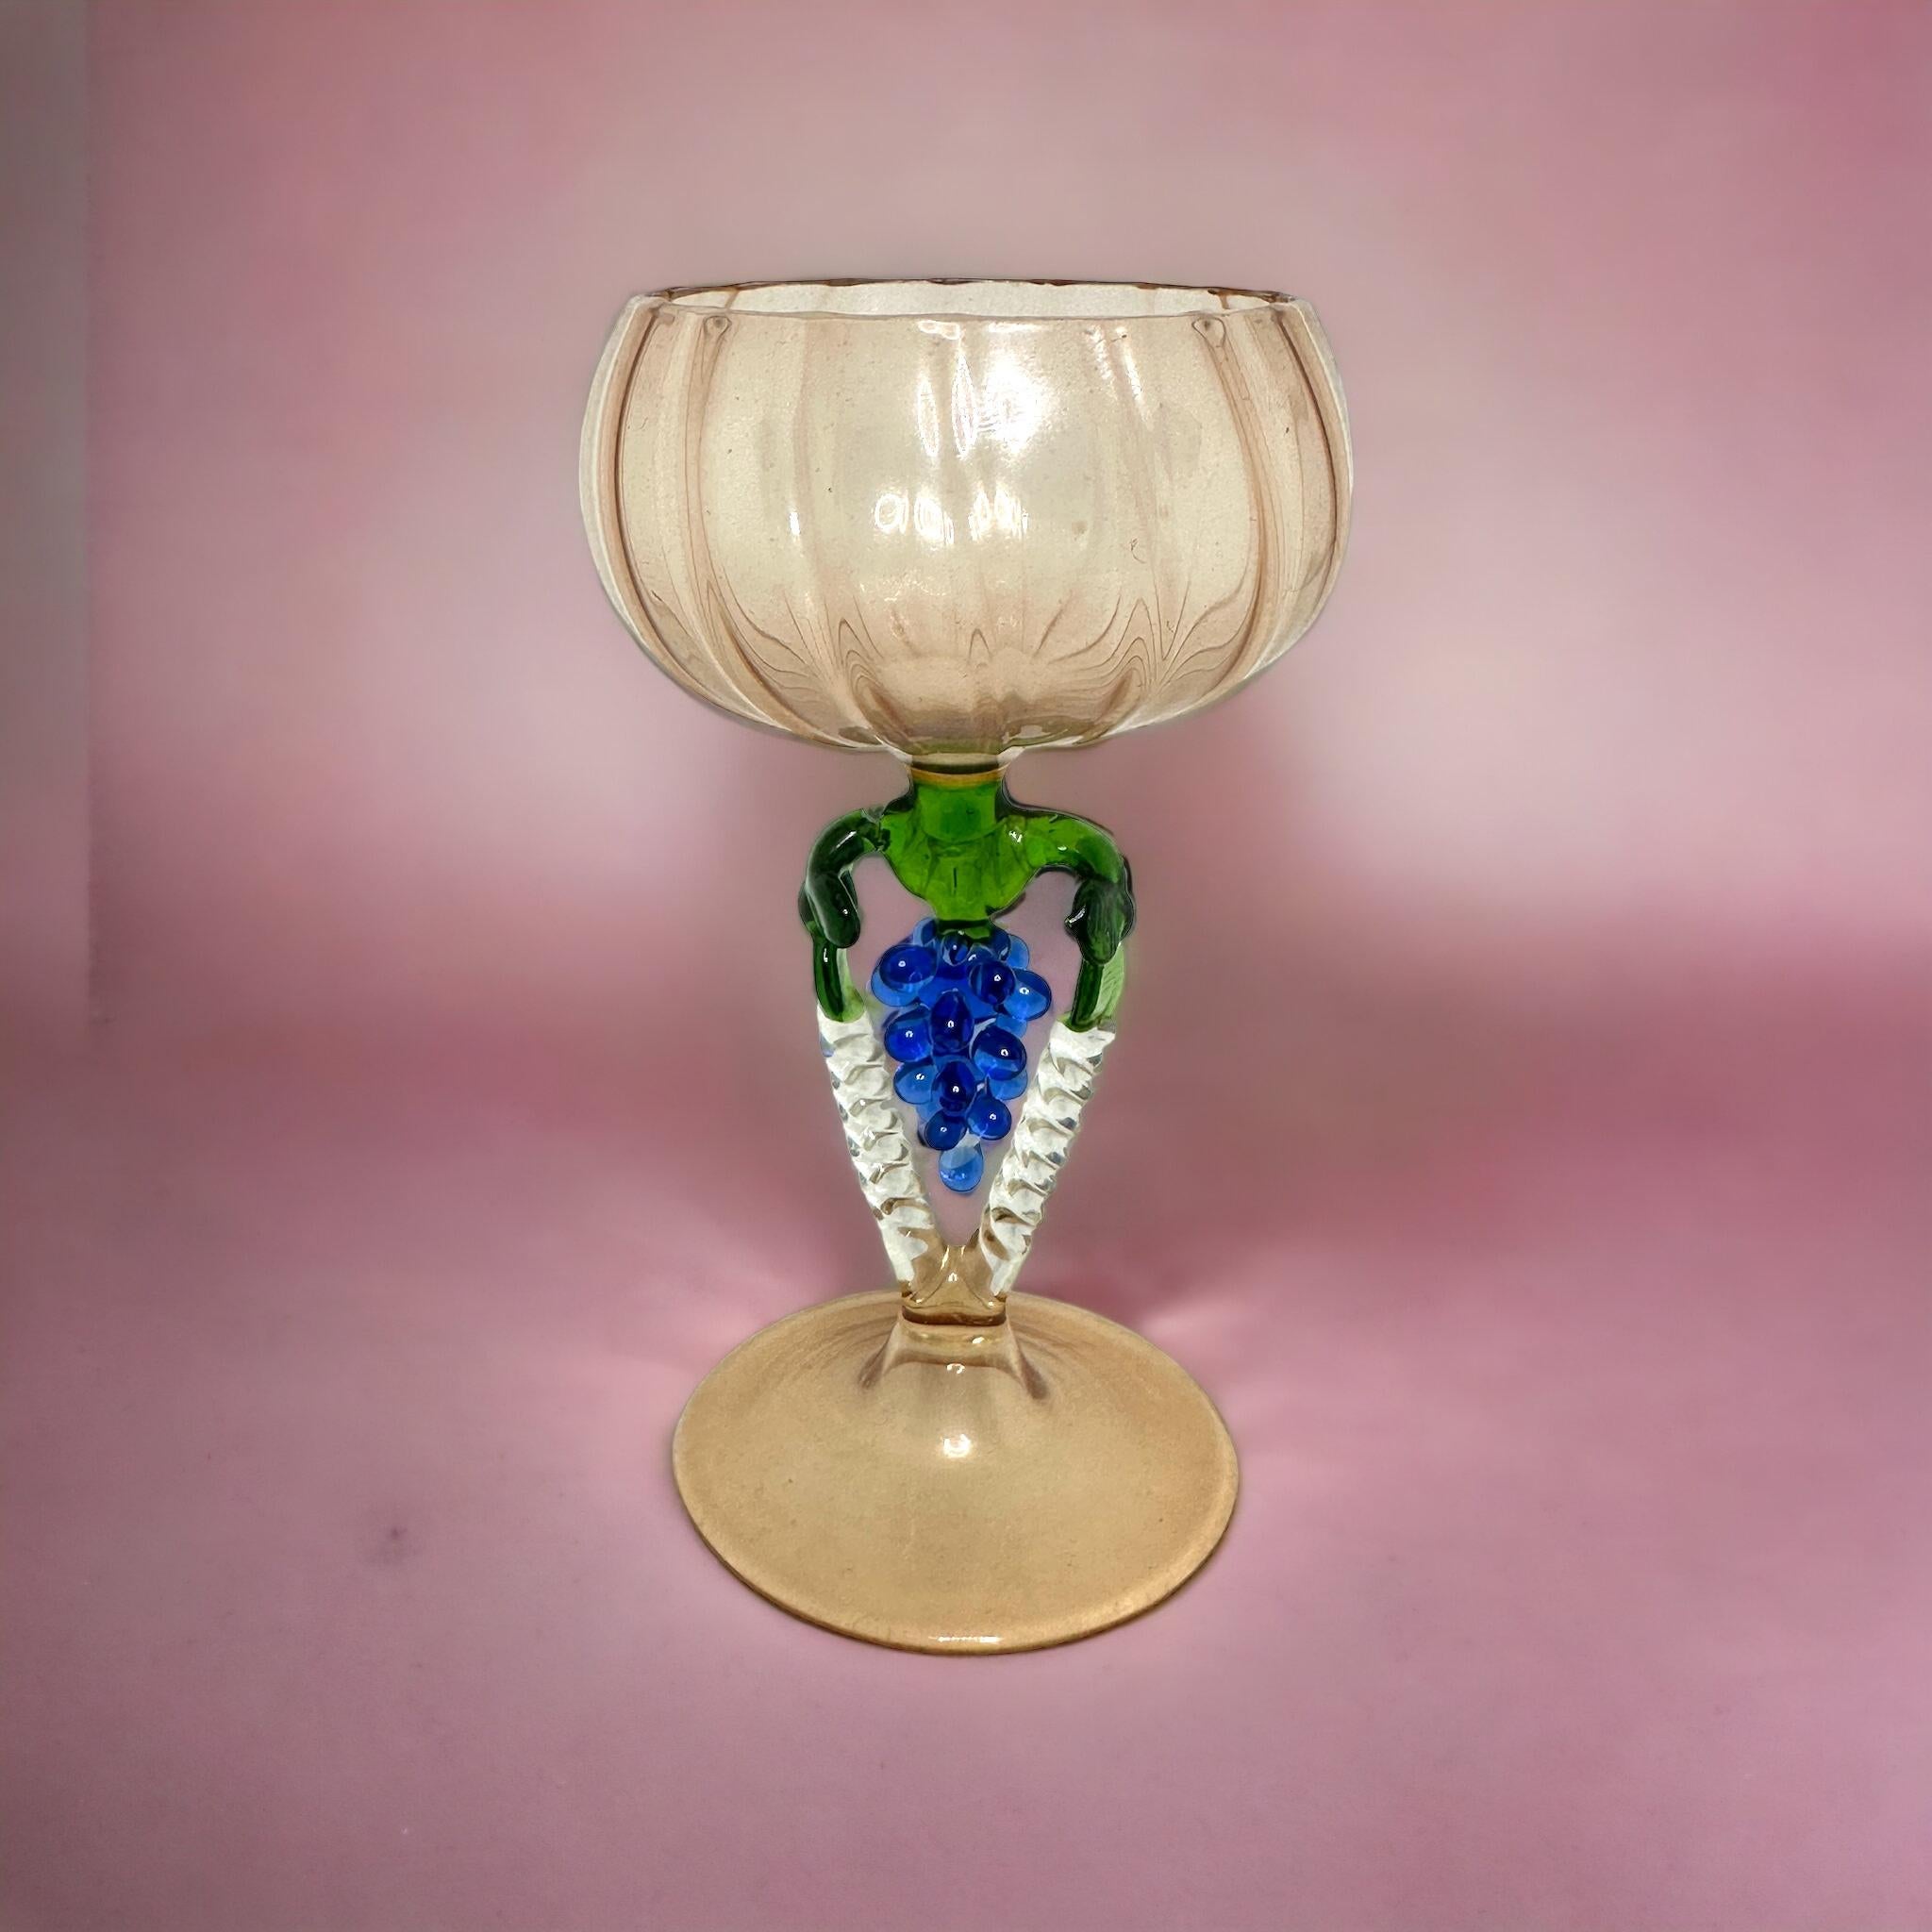 Dies ist ein wunderschönes, einfaches Vintage-Cocktailglas mit Stiel aus Österreich. Es zeigt eine Traubenwelle und ist im Bimini-Stil gehalten. Das hellrosa Glas hat ein geprägtes Design, der Stiel ist eine Weintraube in blauer Farbe. Der Sockel